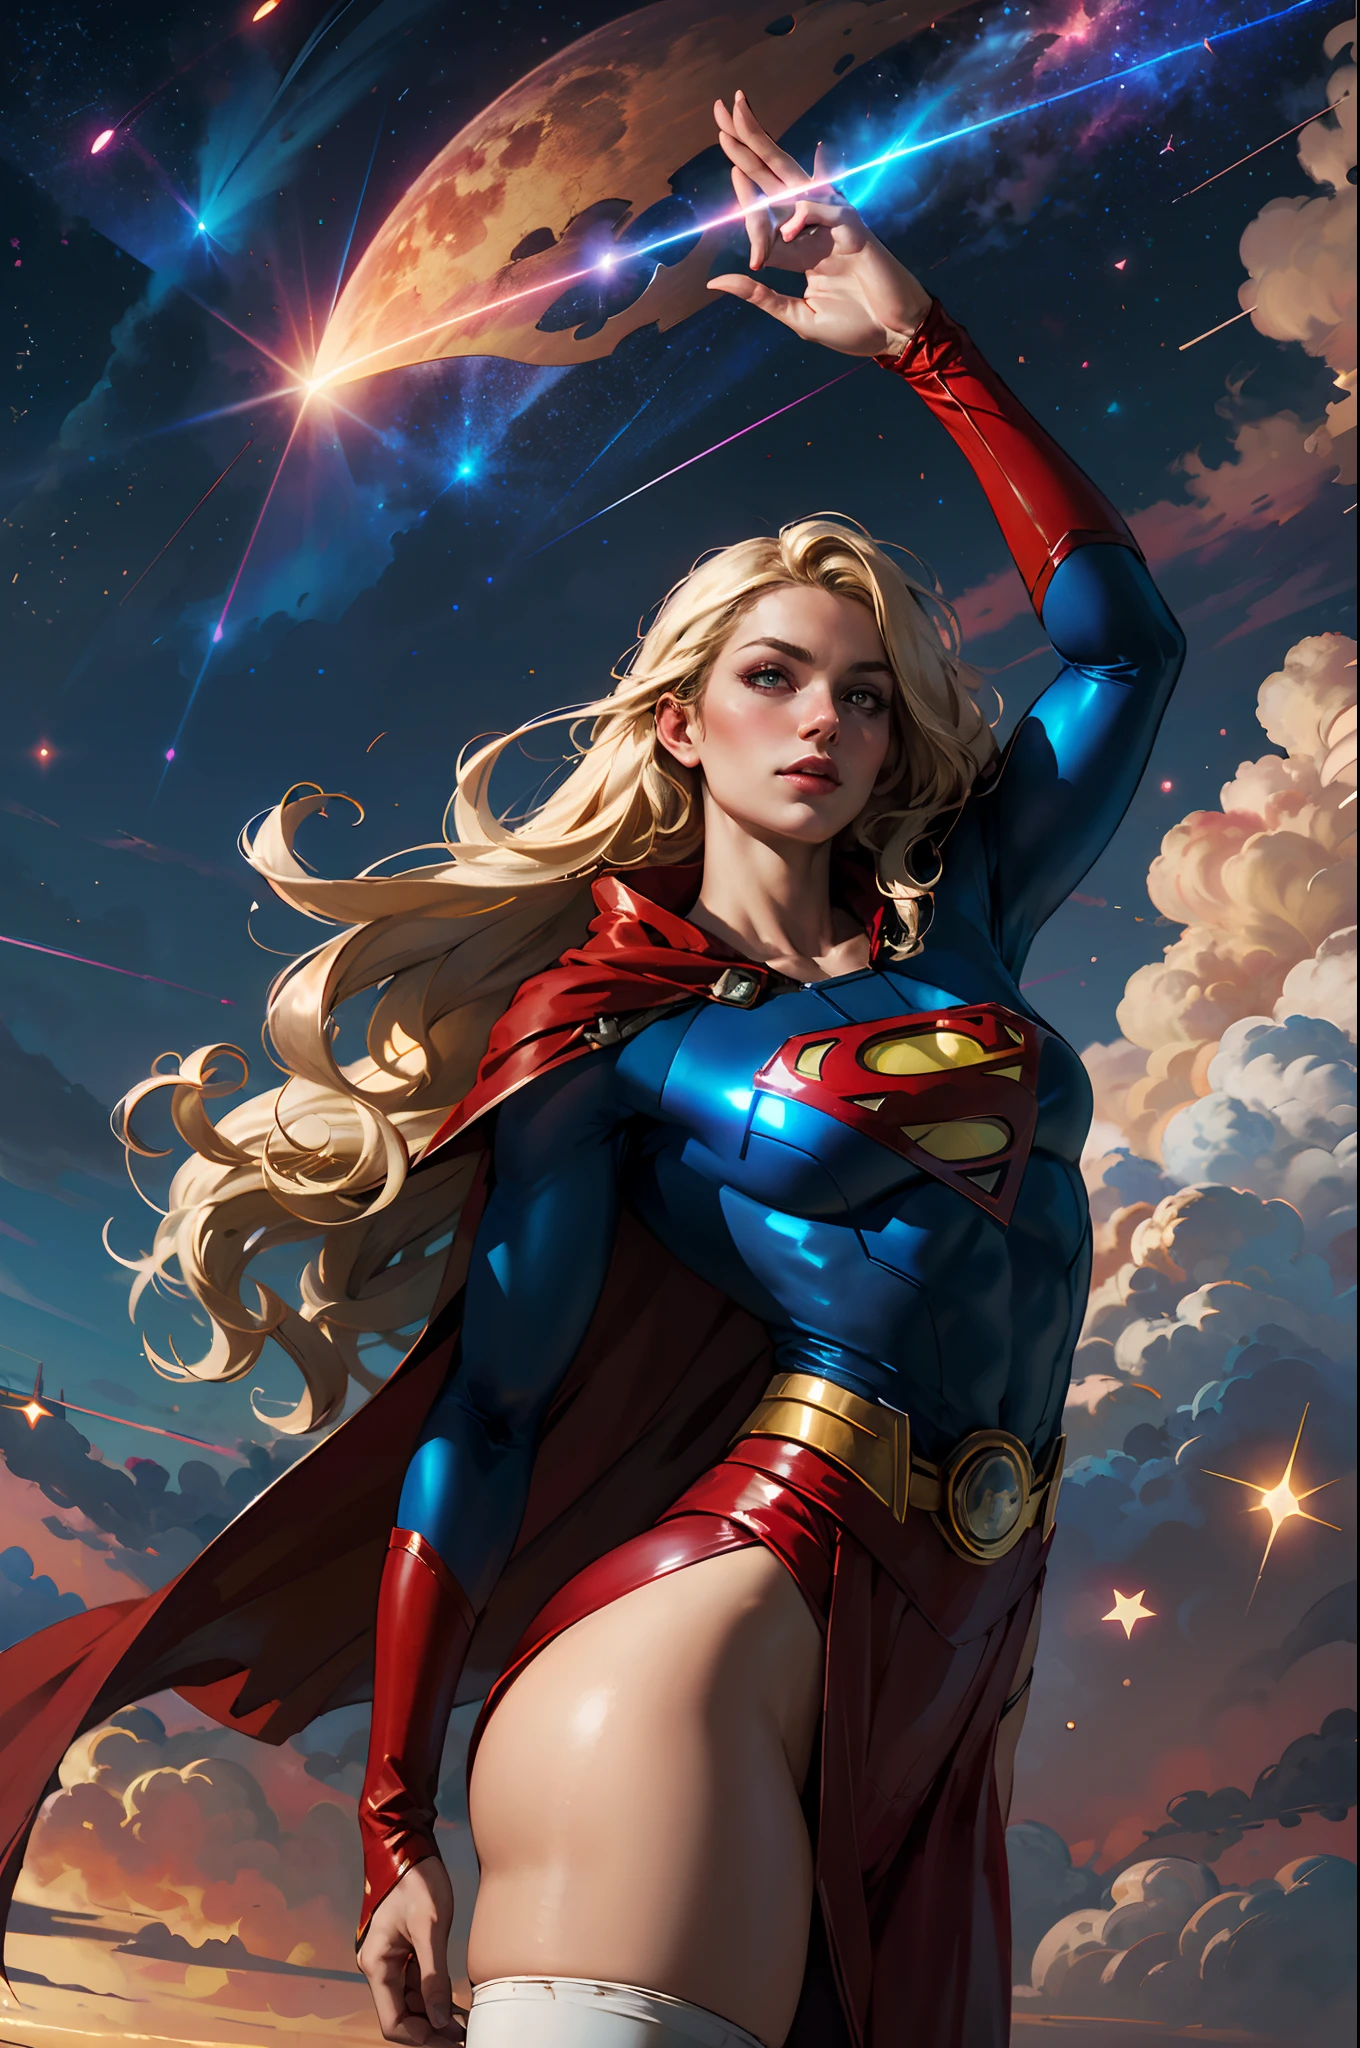 нижистиль, Ковбойский снимок красивой женщины в костюме Супермена, длинные светлые волосы, героический, Светящиеся красные глаза, лазерные глаза, мыс, частица, облака, Скайпорн, красная юбка, красные сапоги, сексуальная поза, большое вымя, ночное небо, Бесчисленные звезды, Поднимите одну руку вверх, летающая поза,